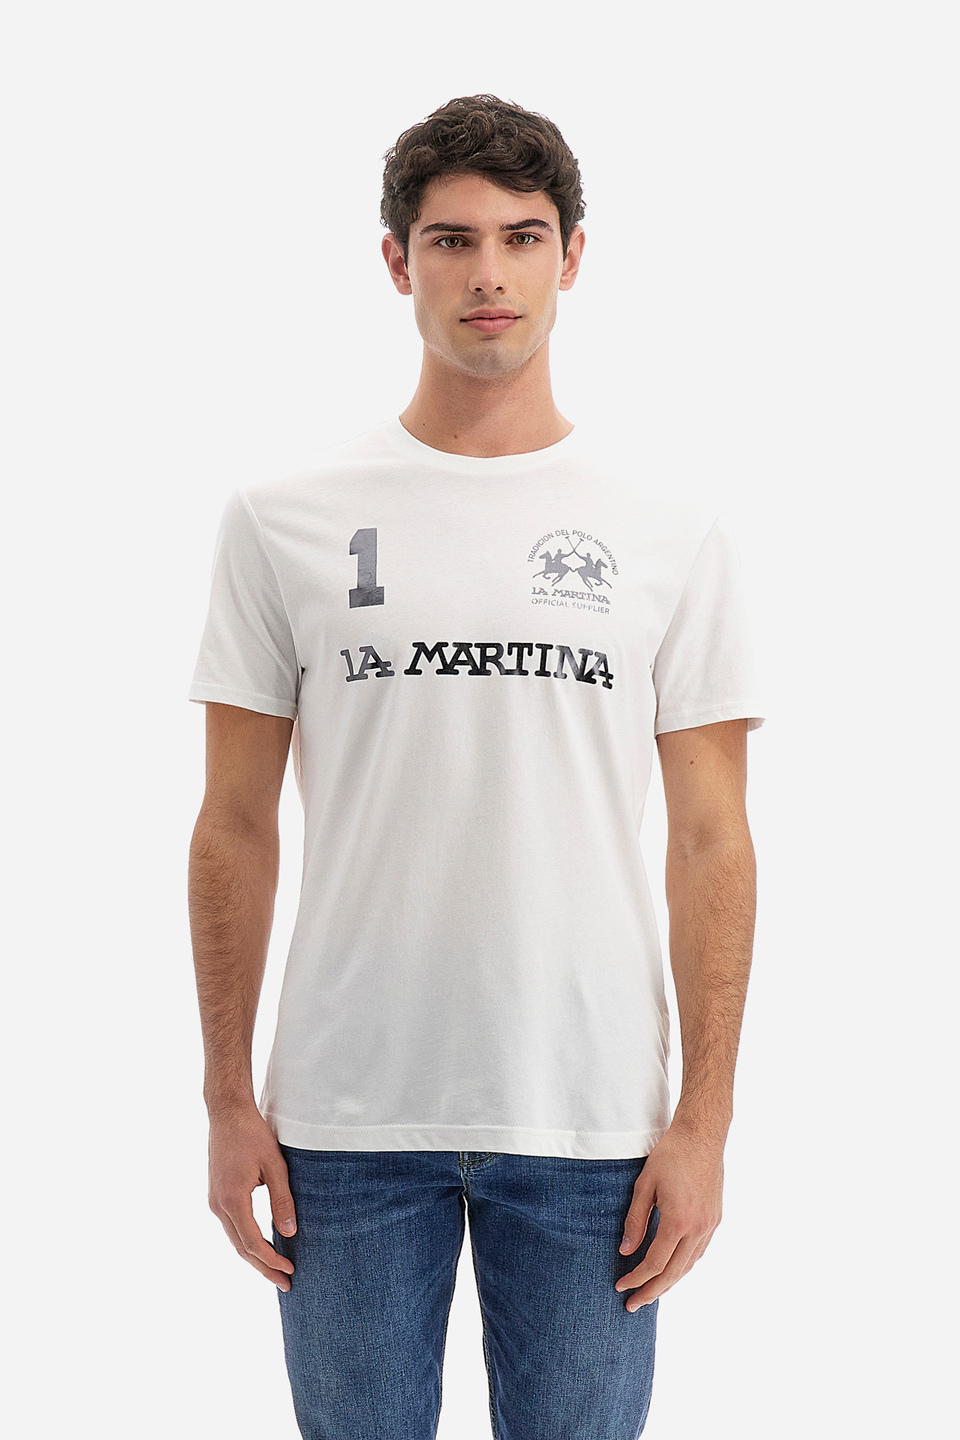 Herren-T-Shirt aus 100 % Baumwolle mit normaler Passform und kurzen Ärmeln - Reichard | La Martina - Official Online Shop